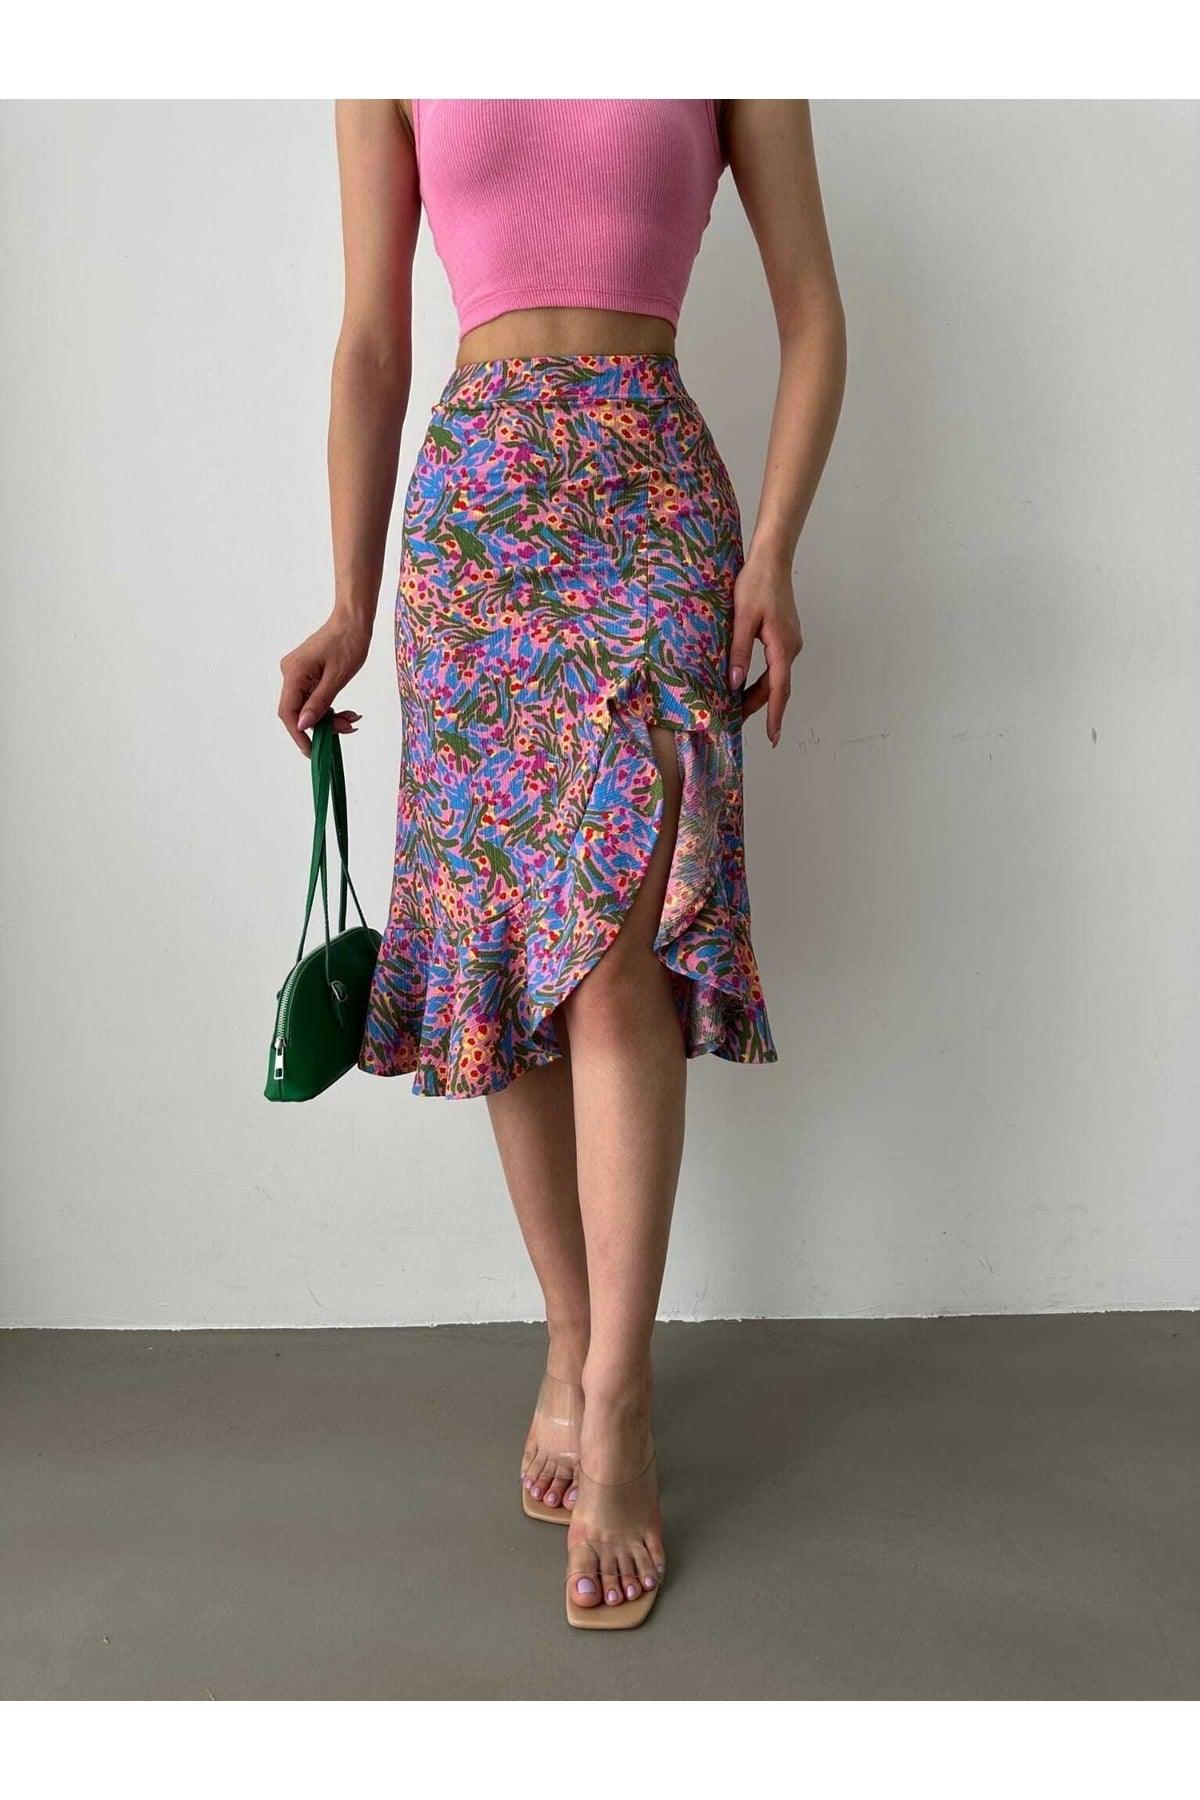 Floral Patterned Slit Cloth Midi Skirt - Swordslife